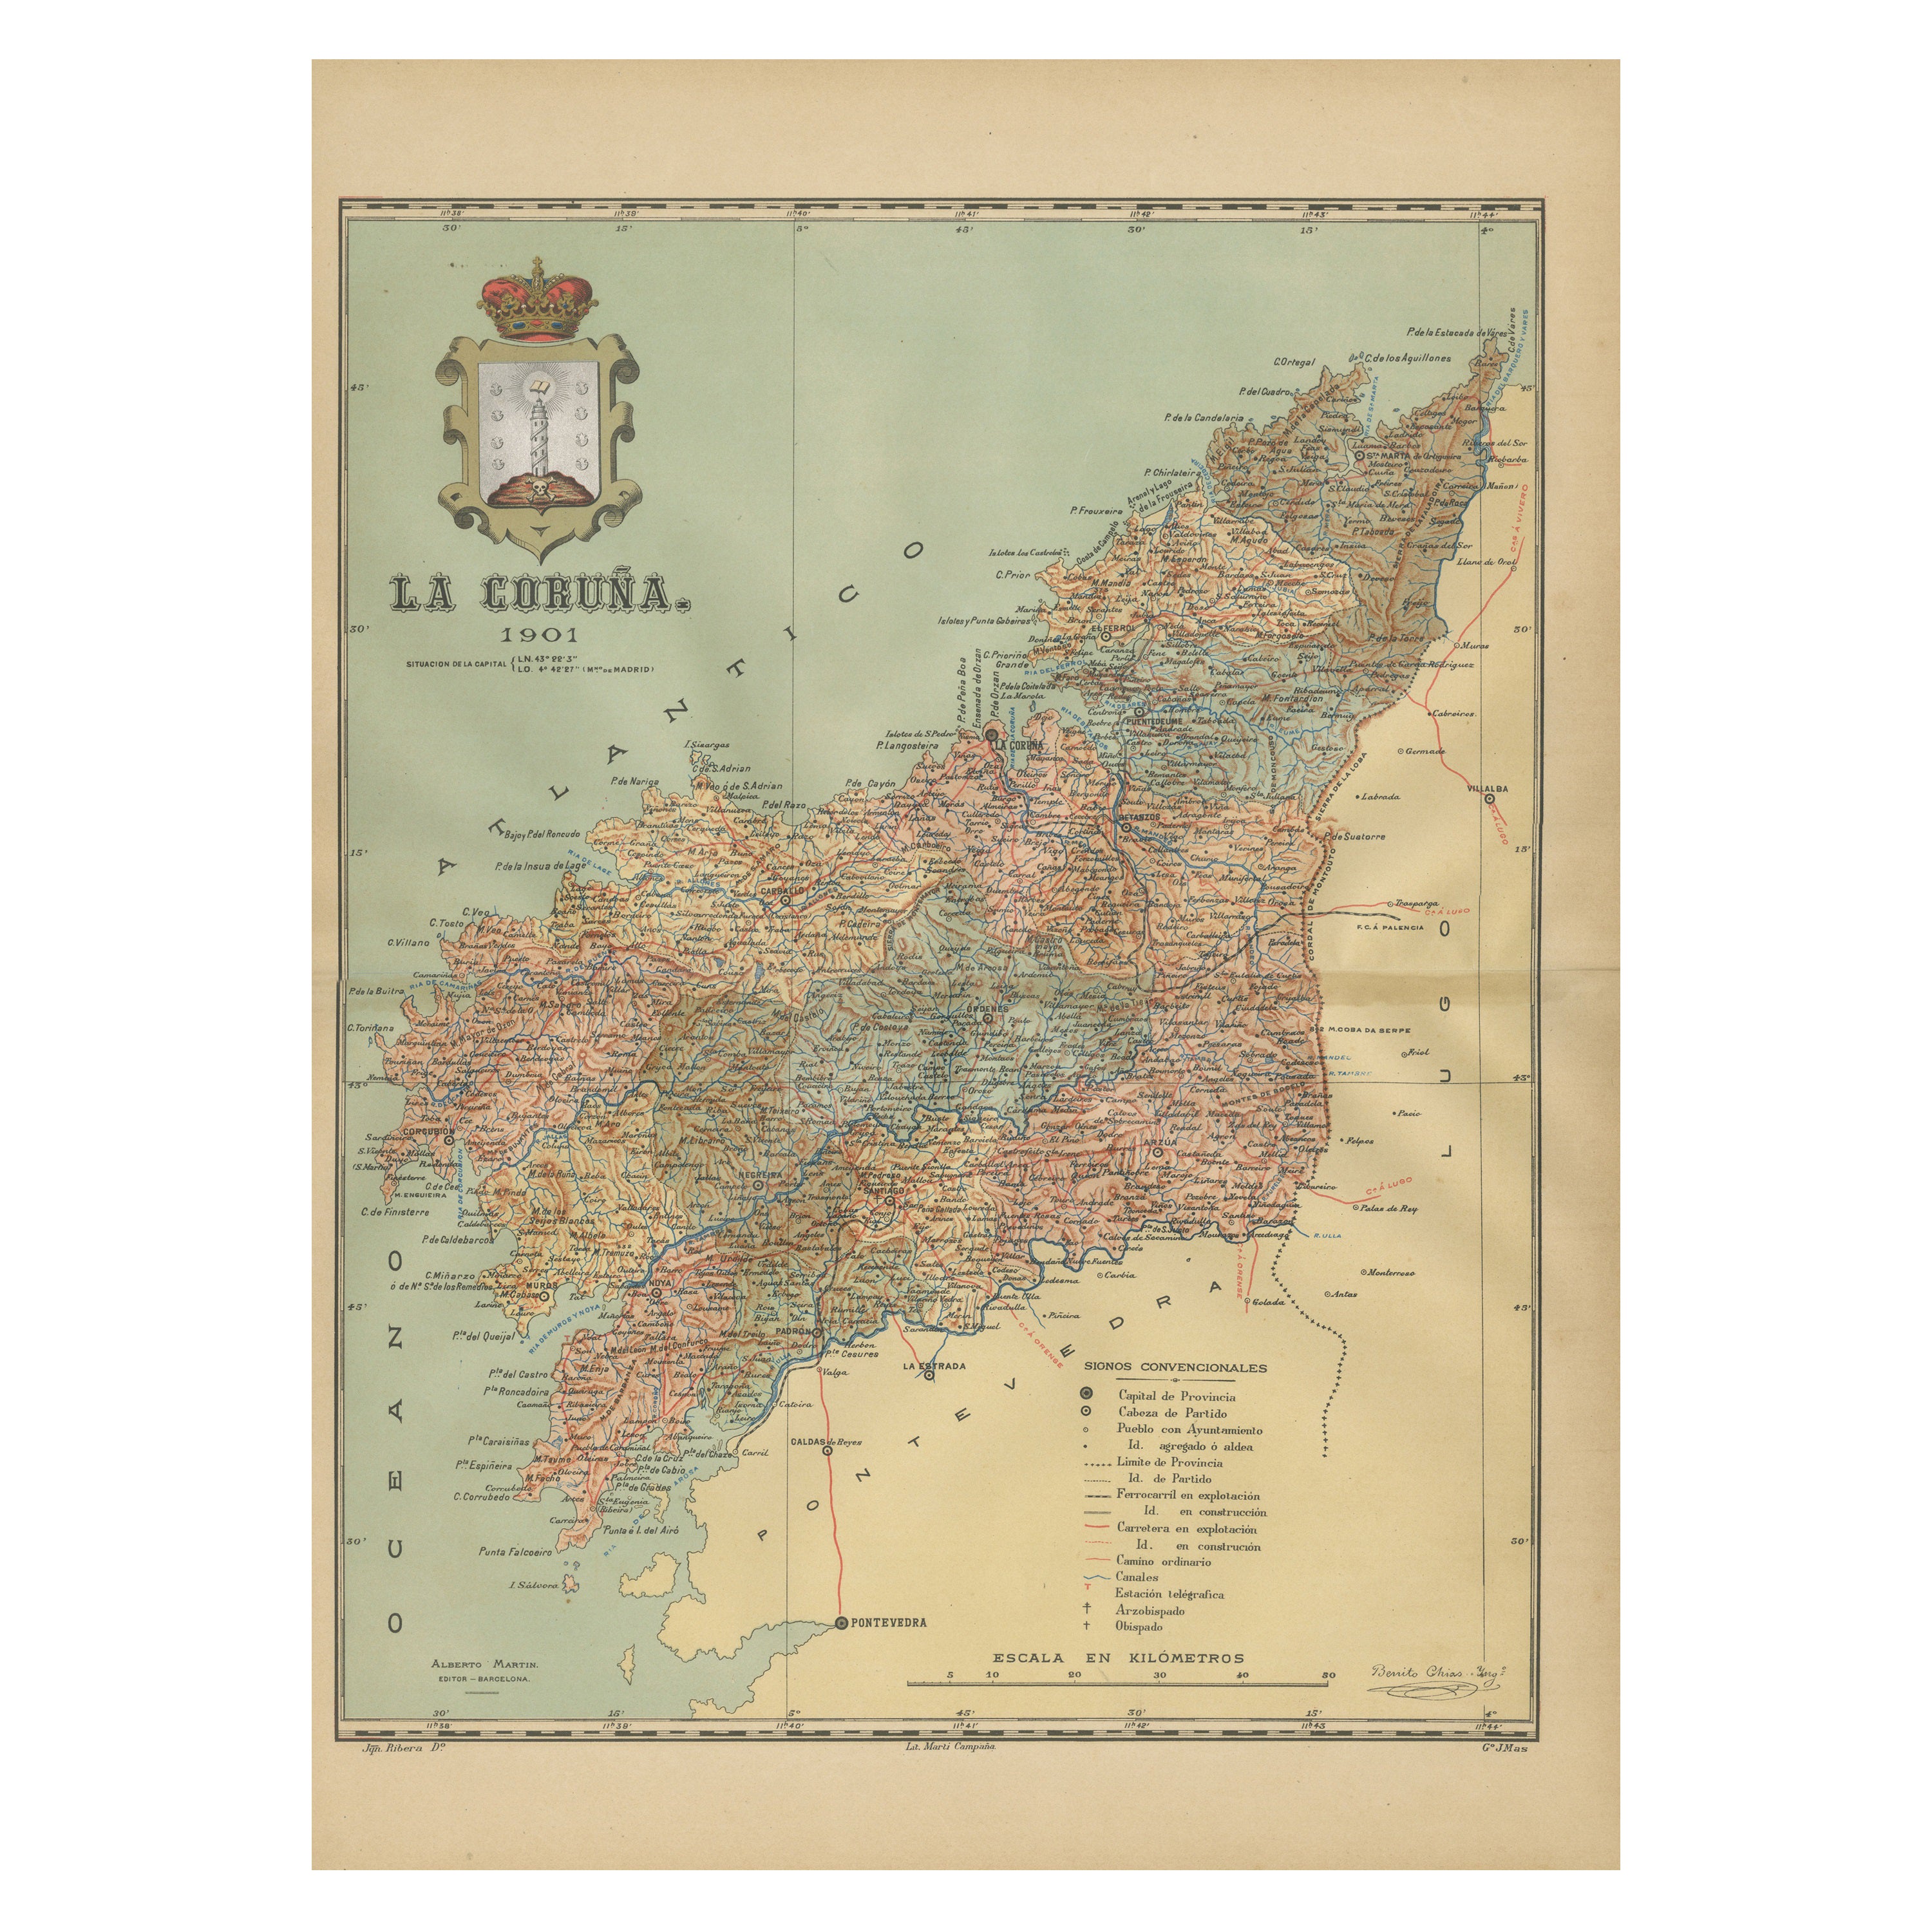 La Coruña 1901: Ein kartografischer Blick auf die Küstenprovinz Galicia